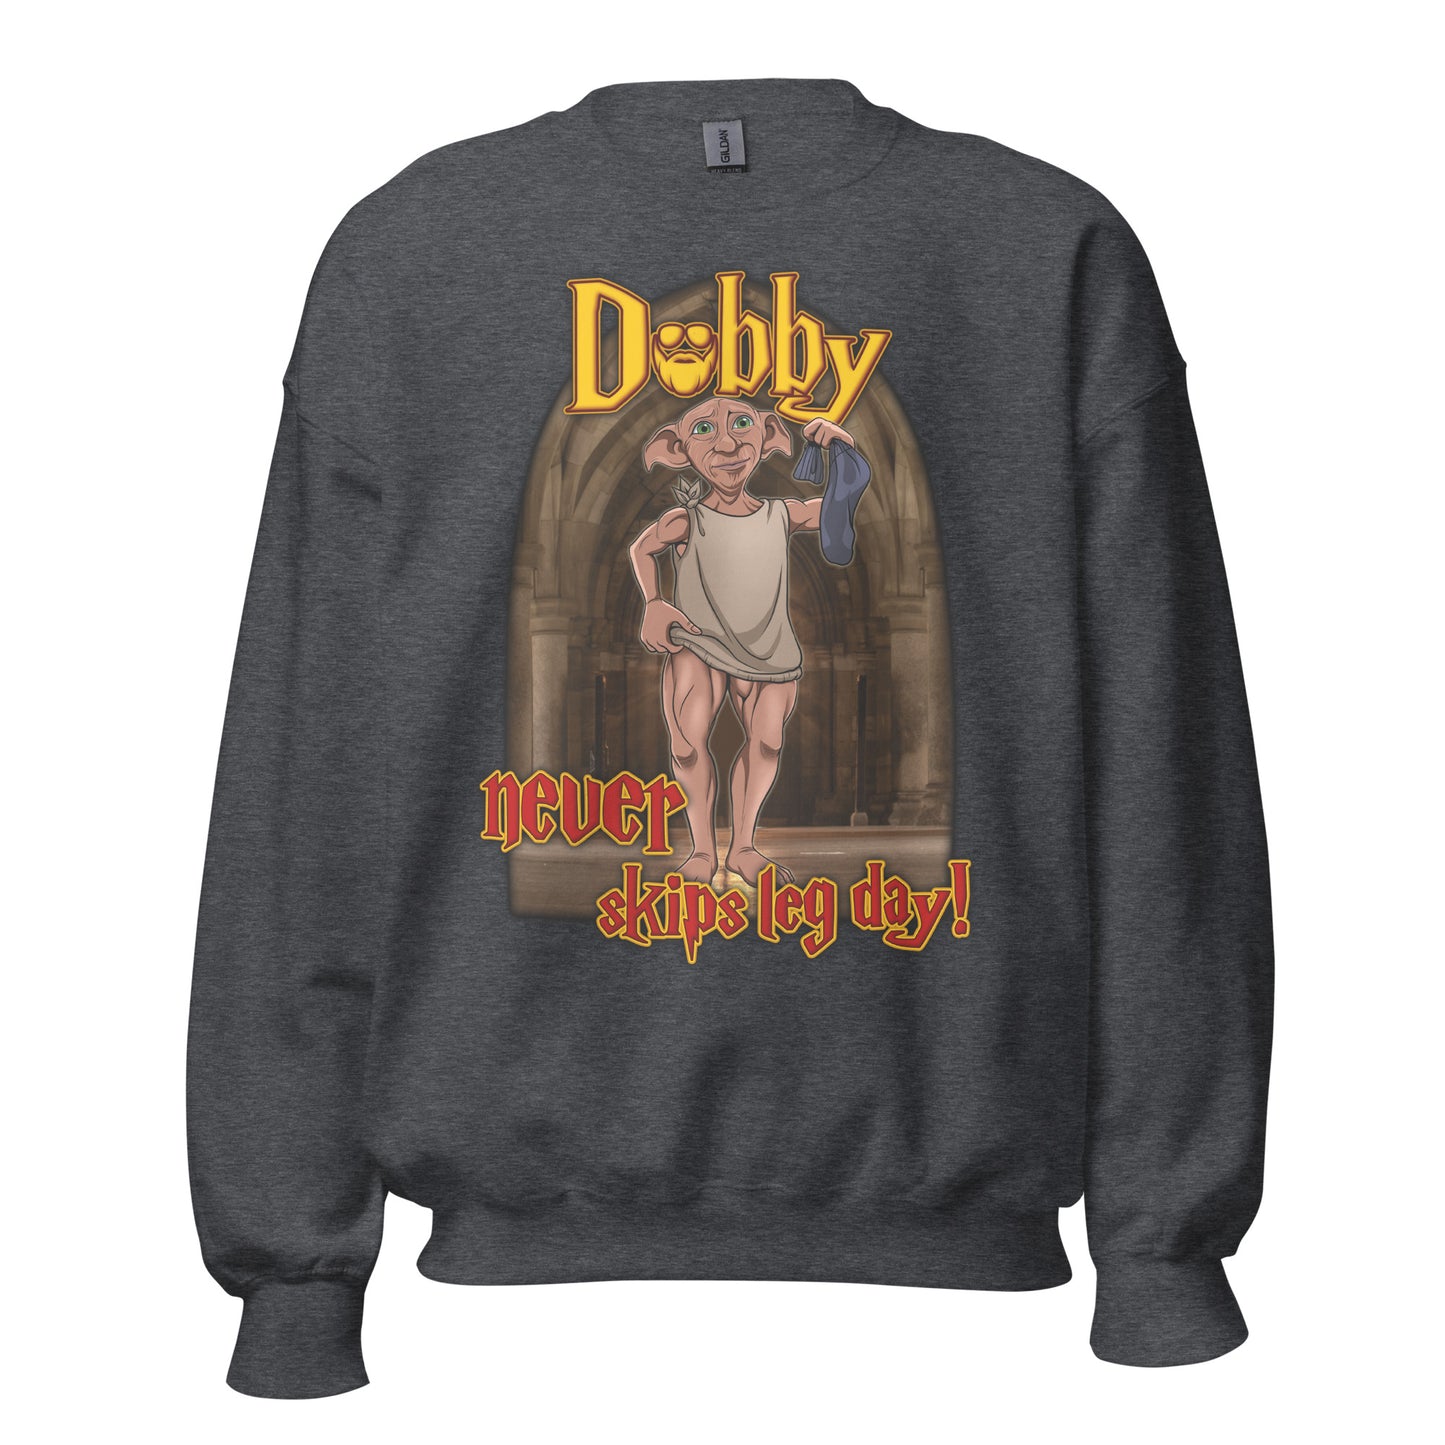 Dobby Never Skips Leg Day! Sweatshirt